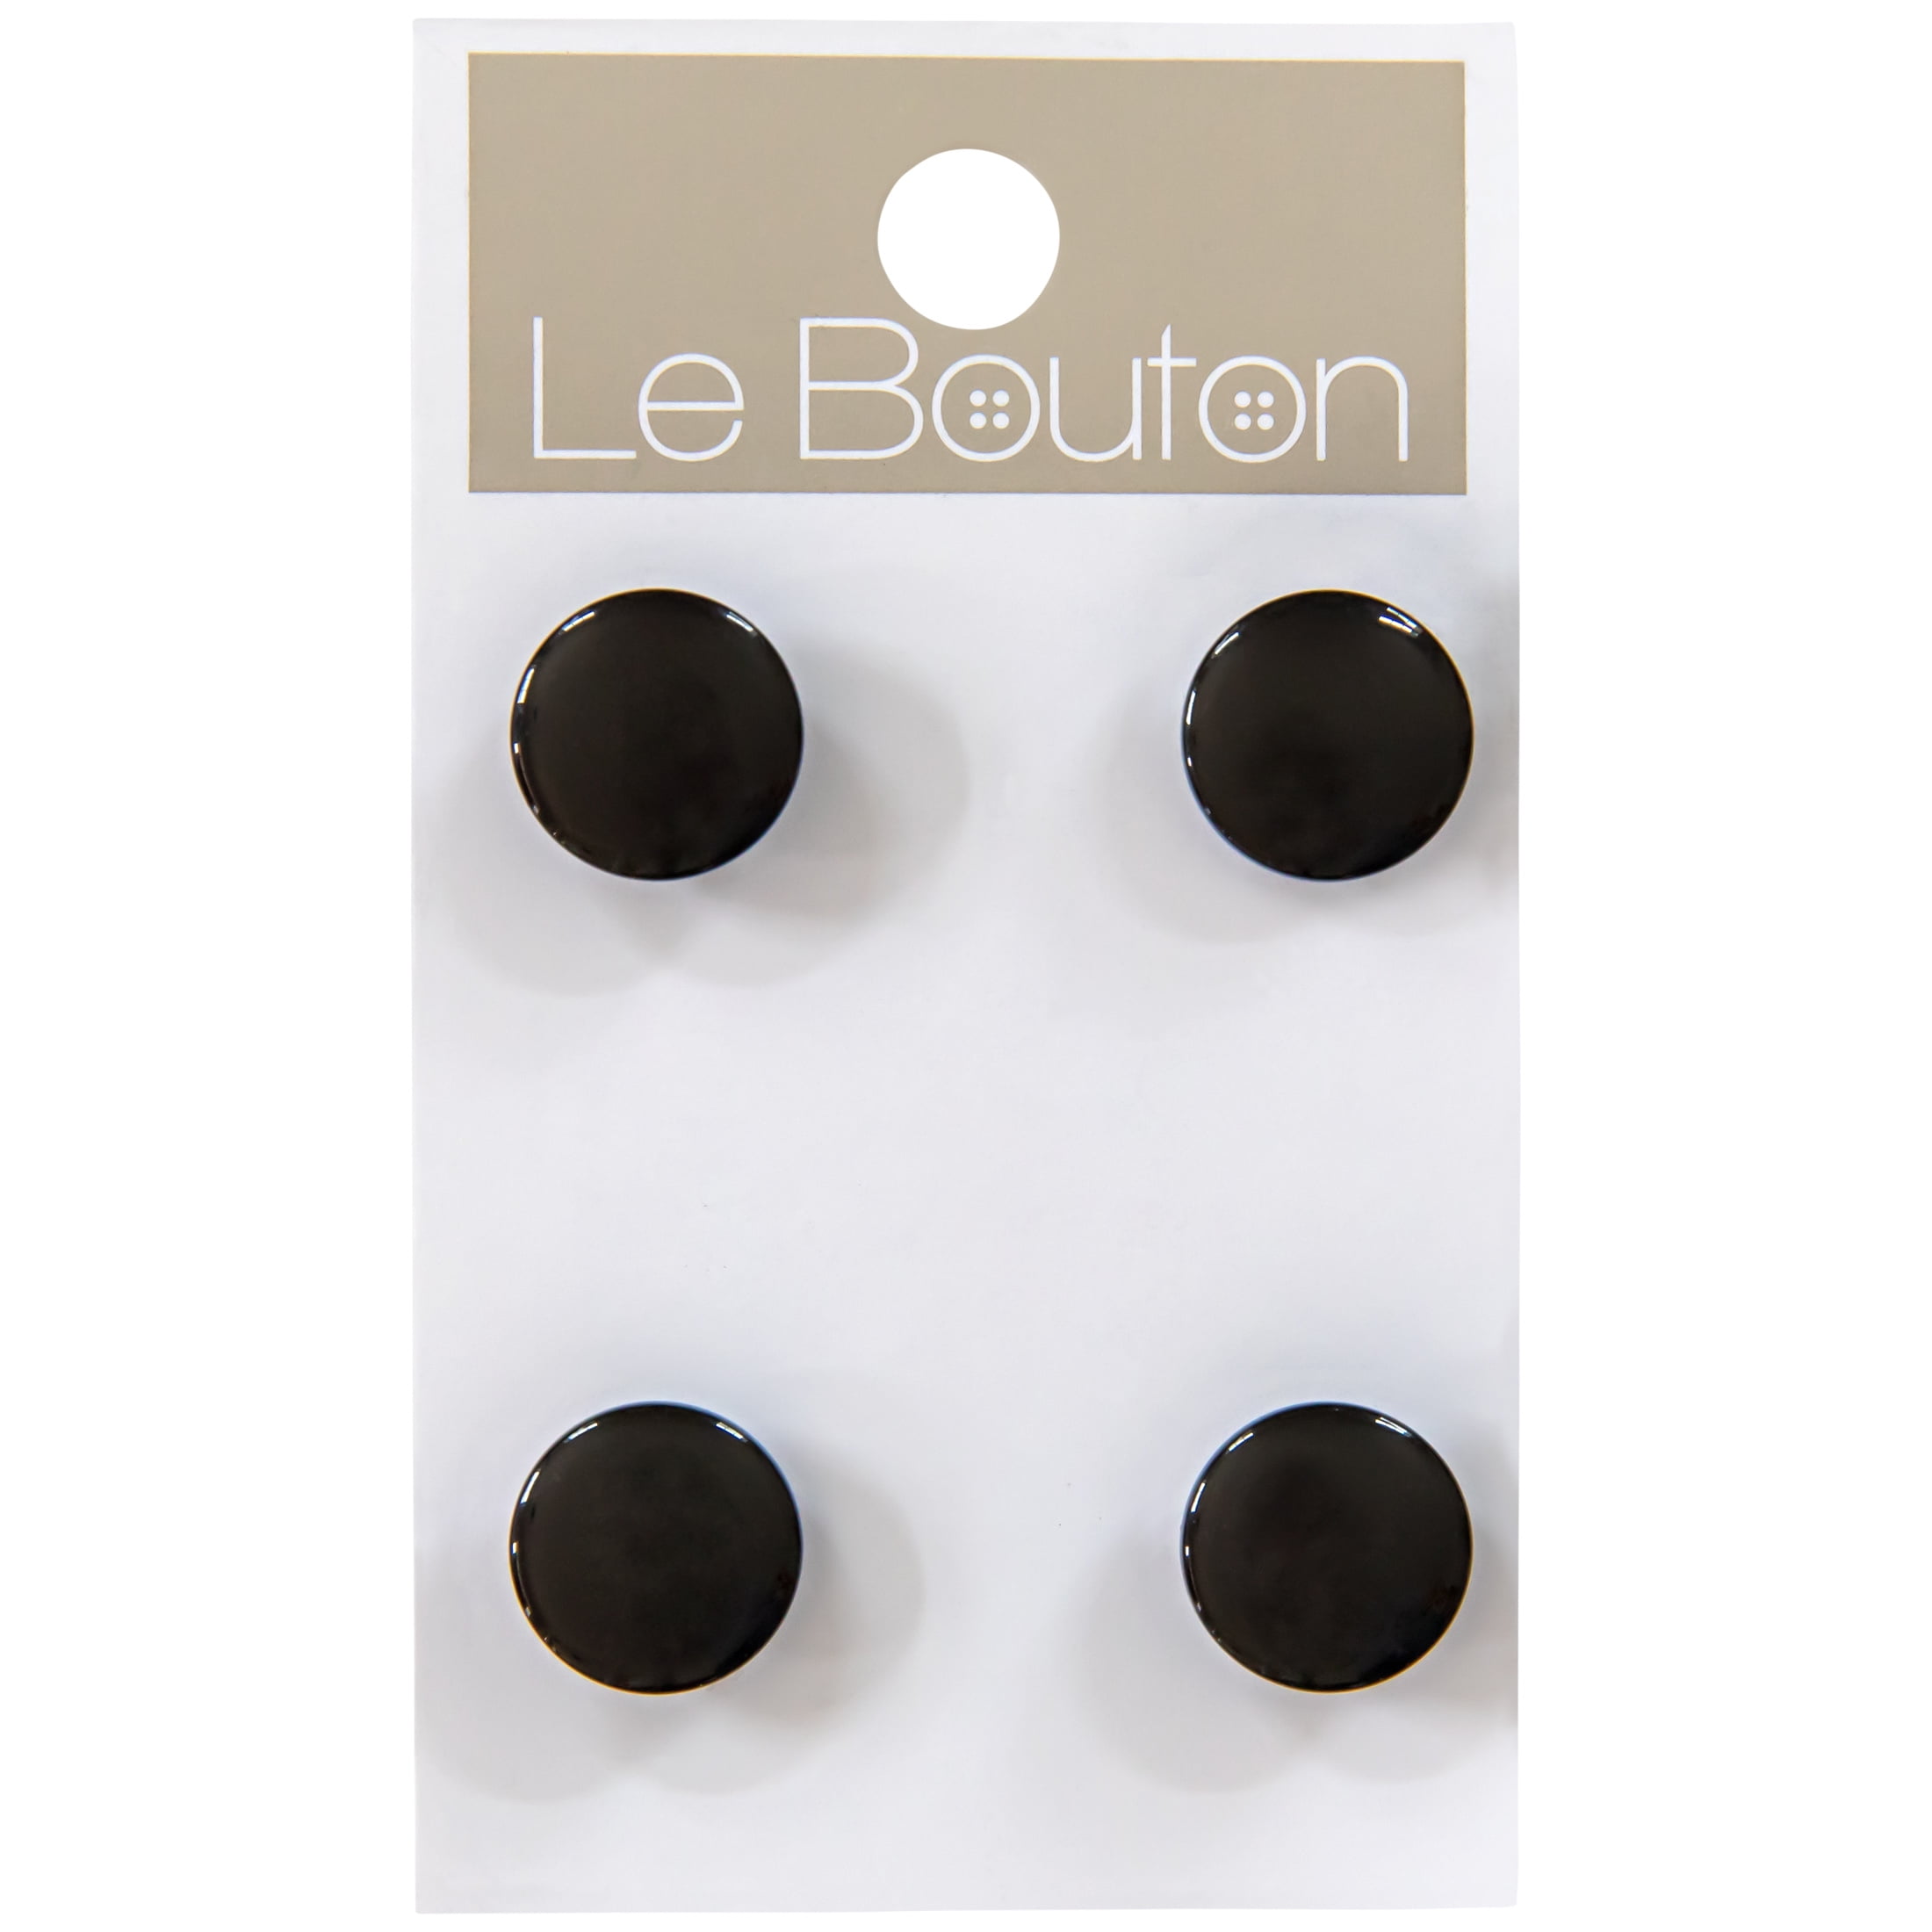 le-bouton-black-1-2-shank-buttons-4-pieces-walmart